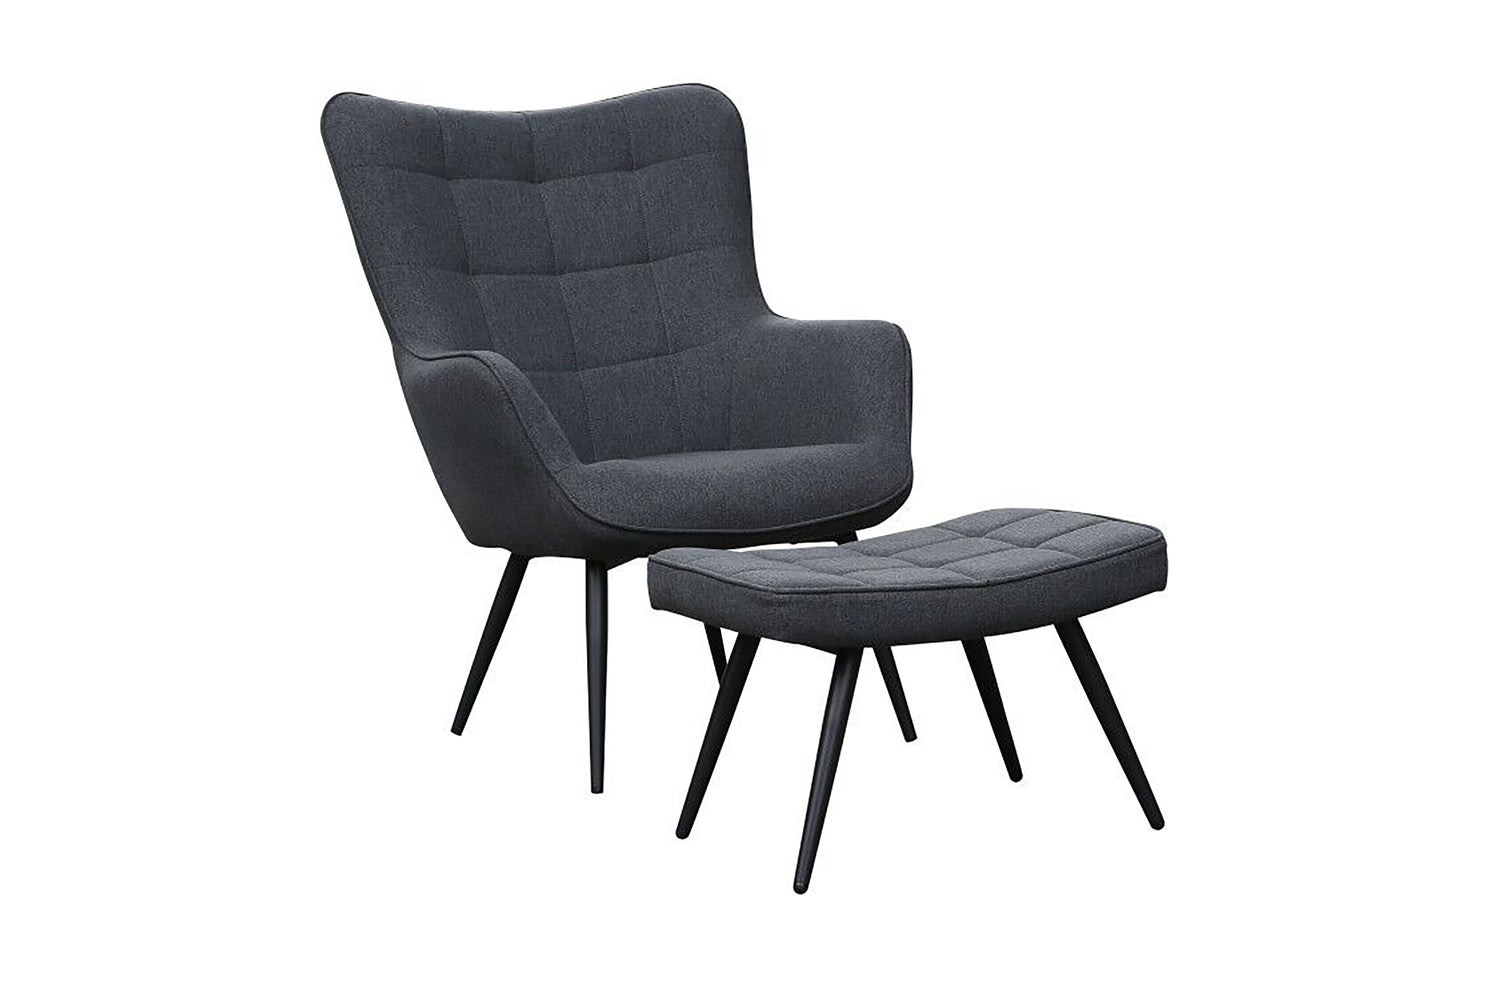 UTA Sessel, Gestell in schwarz, in schwarz, grau, sandfarben oder grün –  byLIVING | Einzelsessel